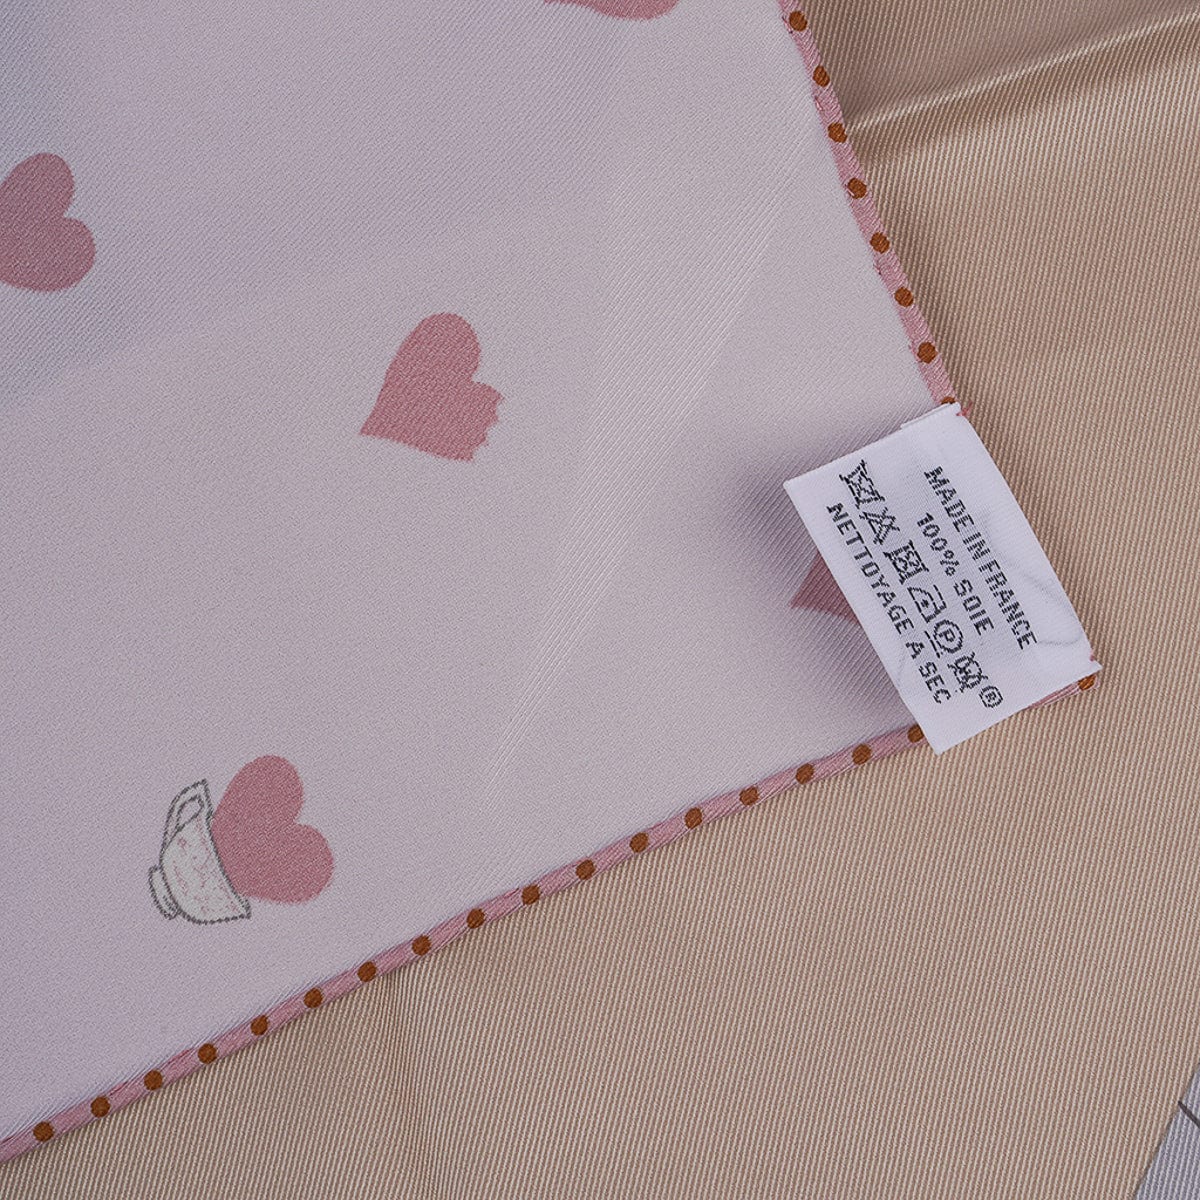 CELINE Paris - French Luxury brand silk scarf w/ tiny hearts pink grey -NWT